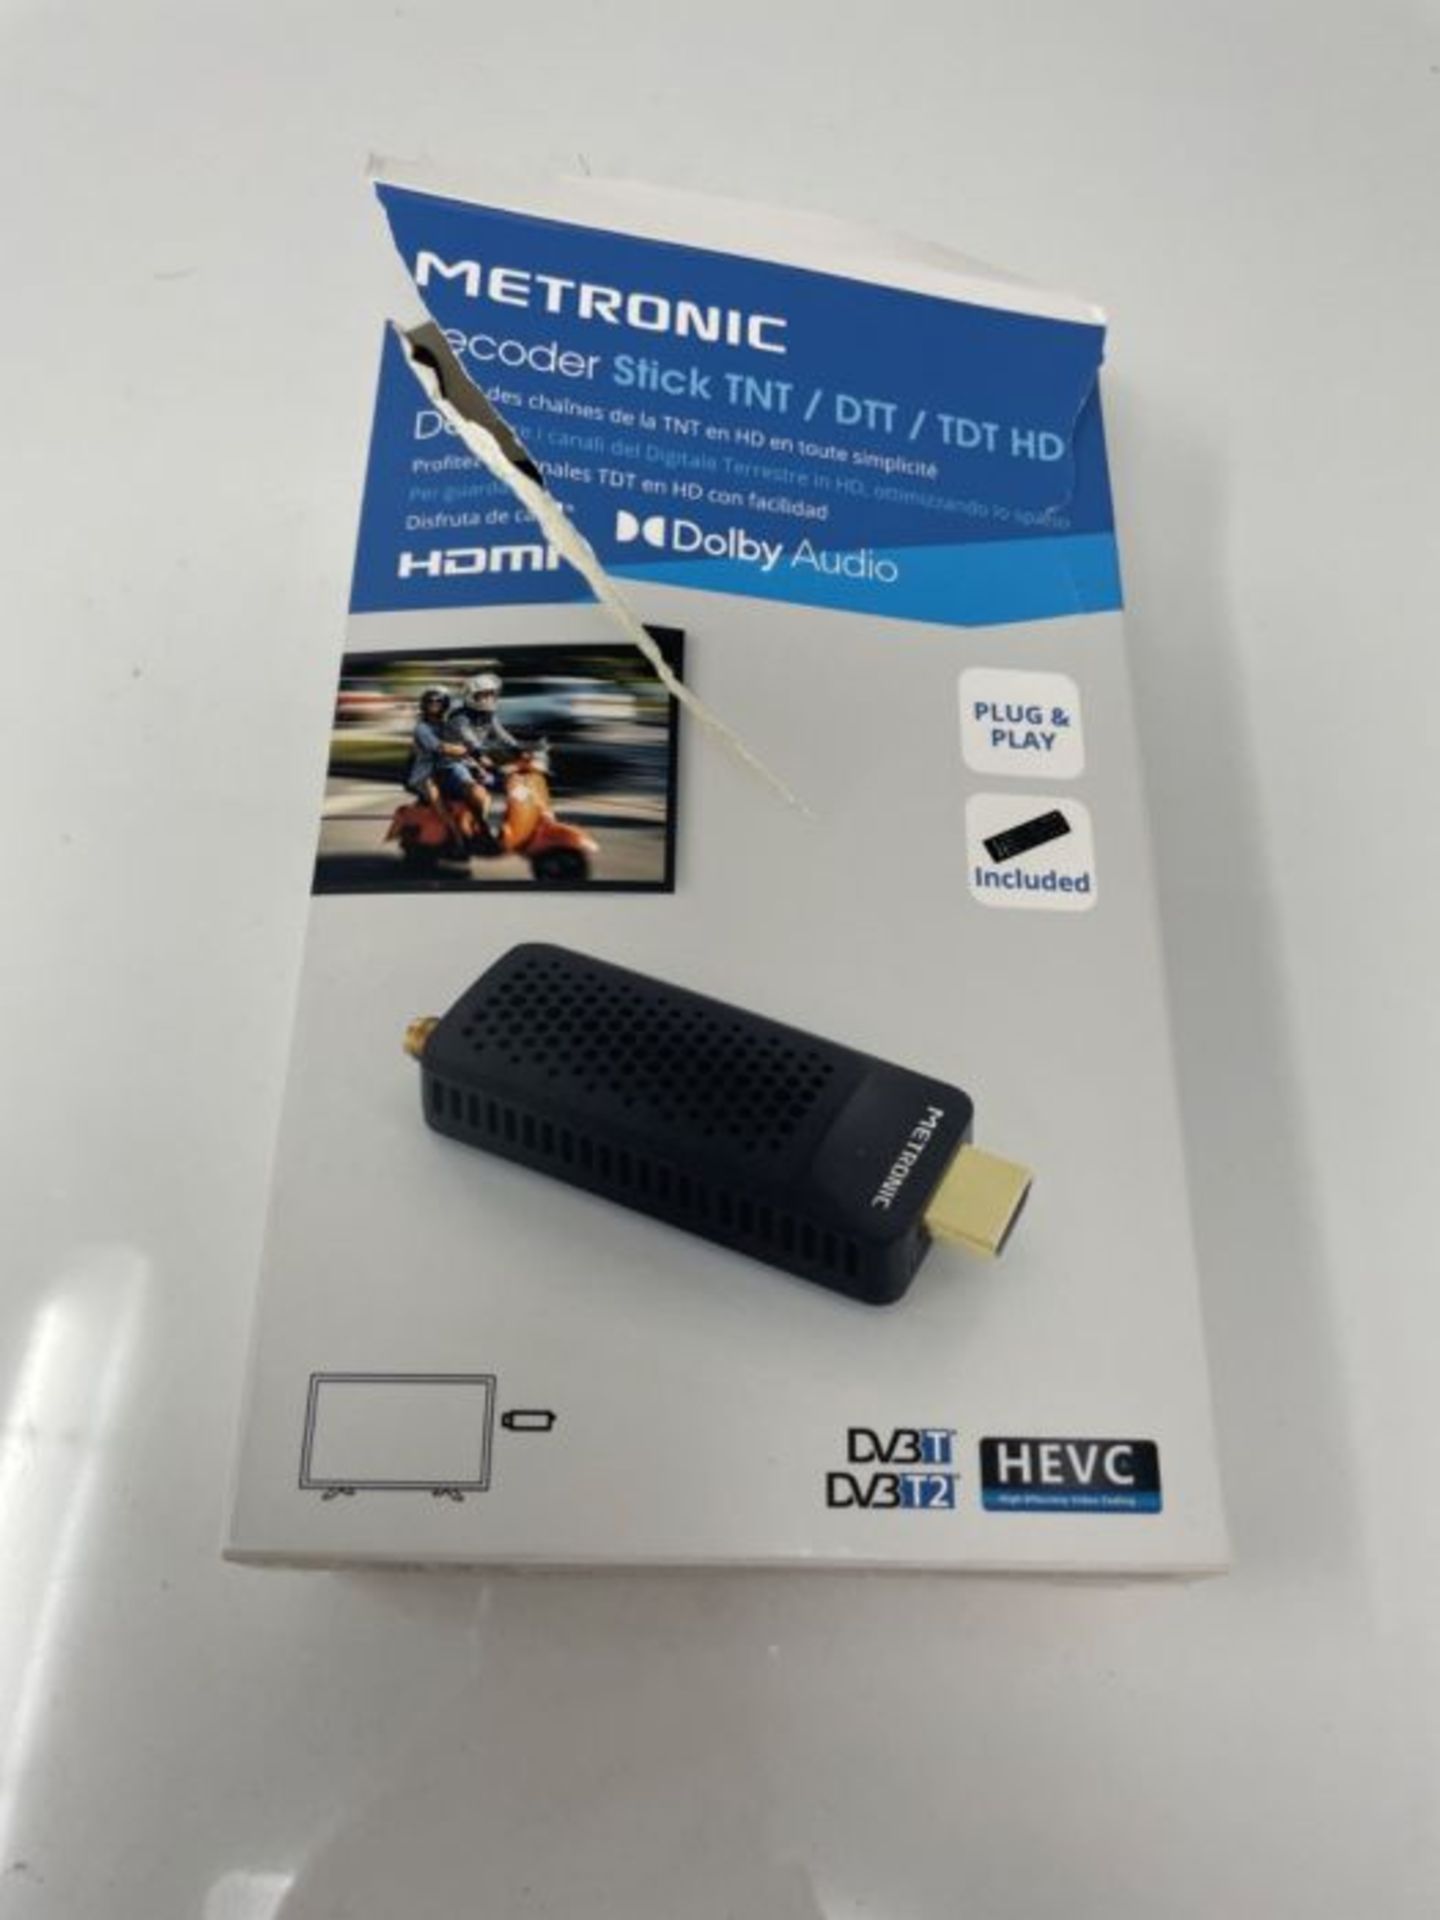 Metronic 441625 Decoder TDT Dongle Stick DVB-T2 HEVC HDMI USB